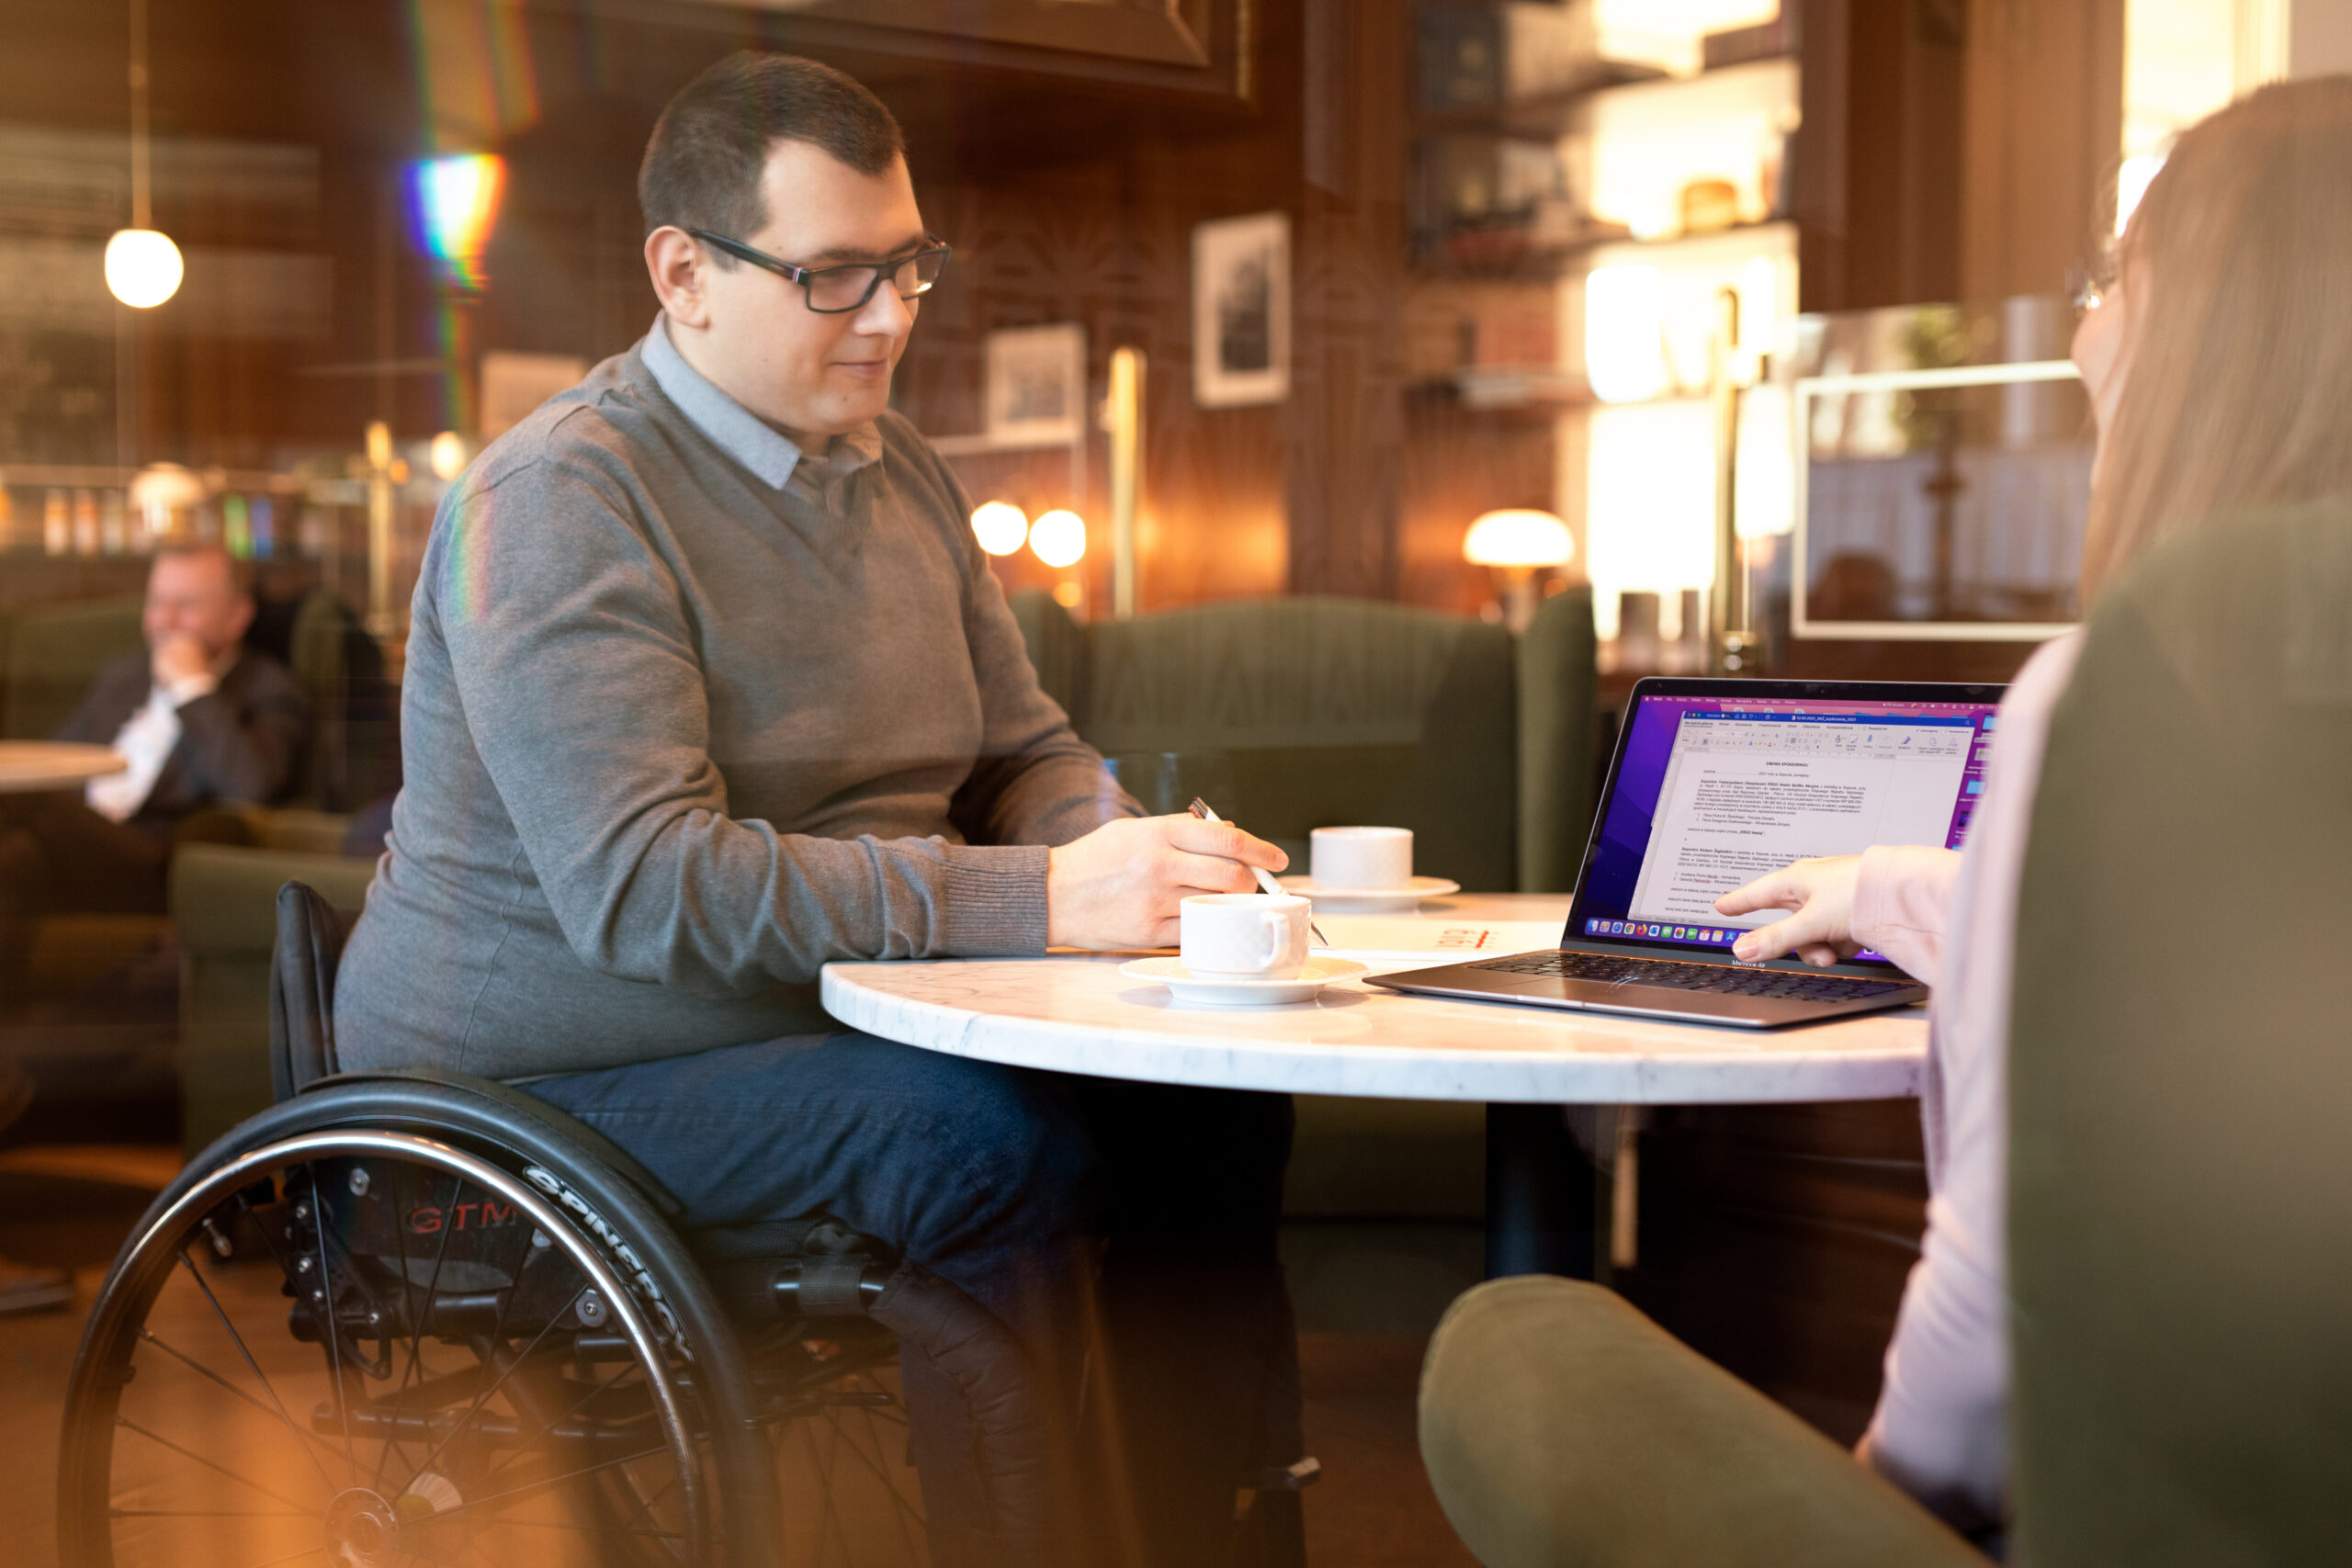 Mężczyzna poruszający się na wózku rozmawia w kawiarni z kobietą. Na stoliku stoją filiżanki i laptop. 